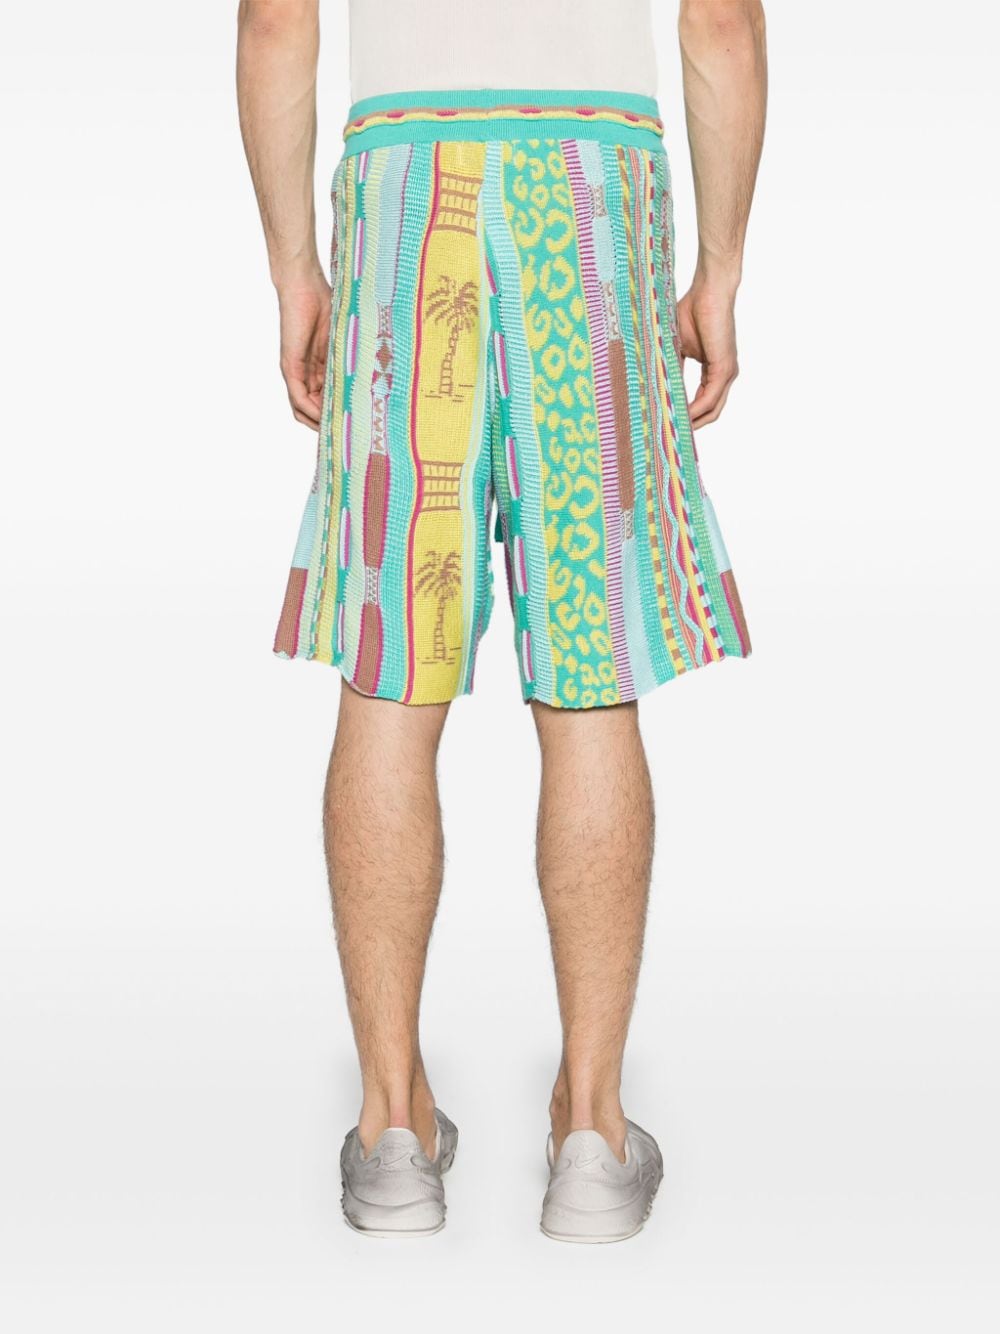 Multicolor knit Bermuda shorts